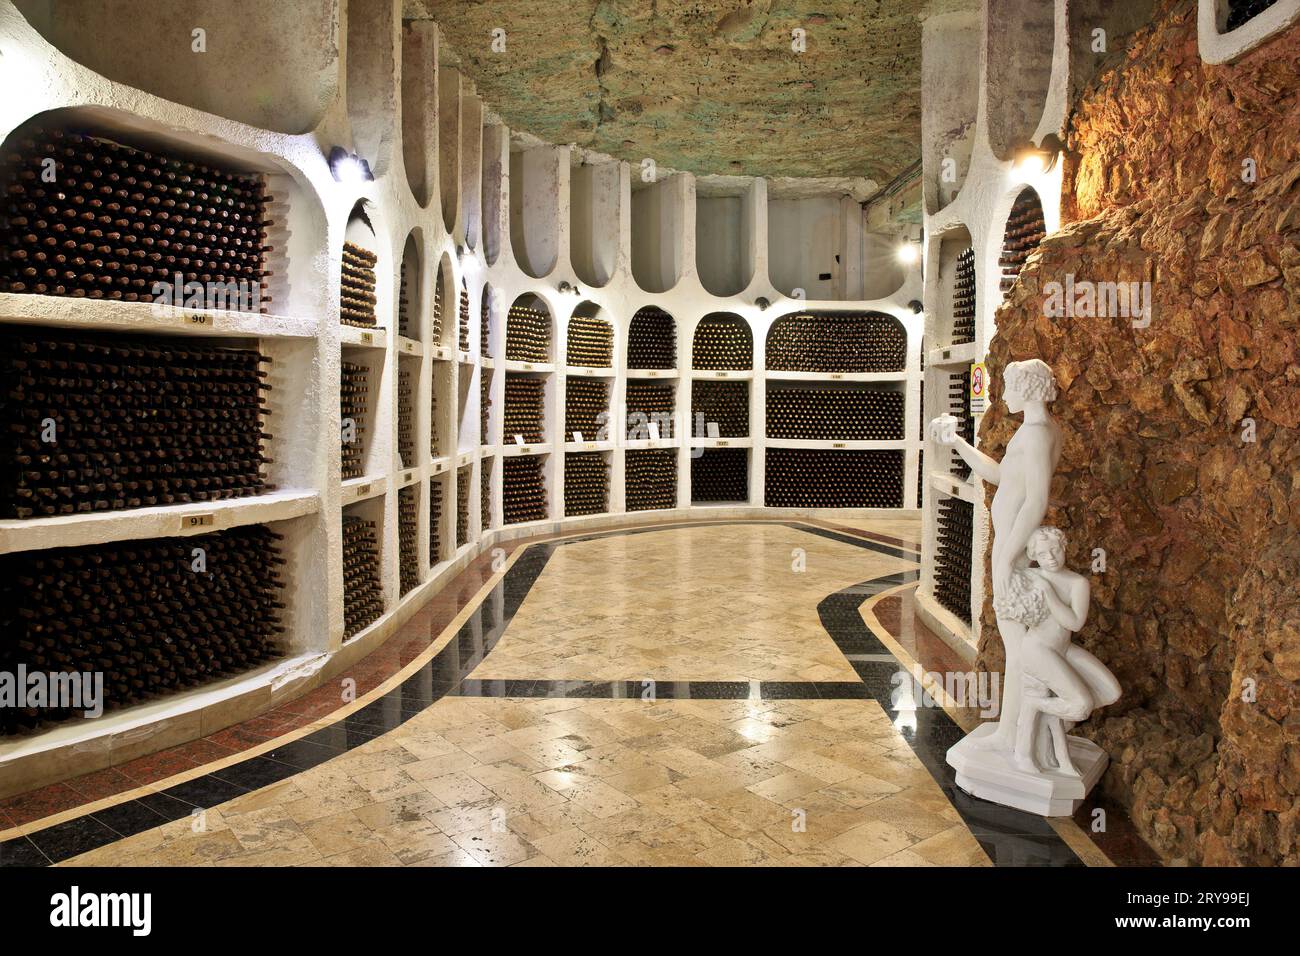 Bottiglie di vino conservate presso le antiche gallerie sotterranee di pietra calcarea della cantina Cricova a Cricova, Moldavia Foto Stock